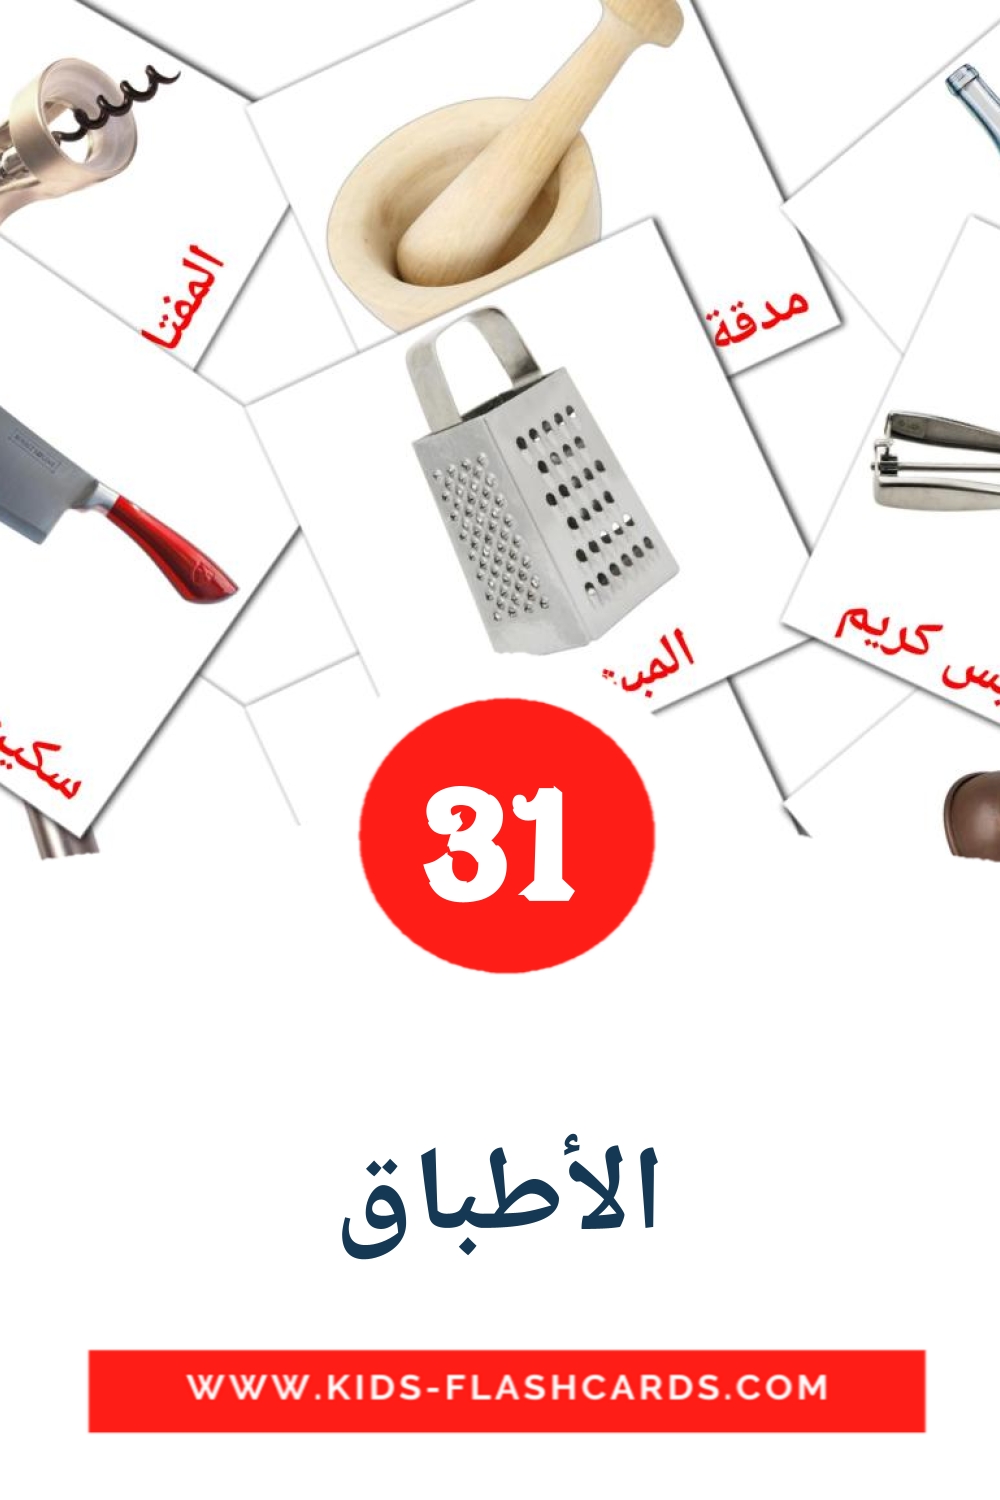 35 الأطباق Picture Cards for Kindergarden in arabic